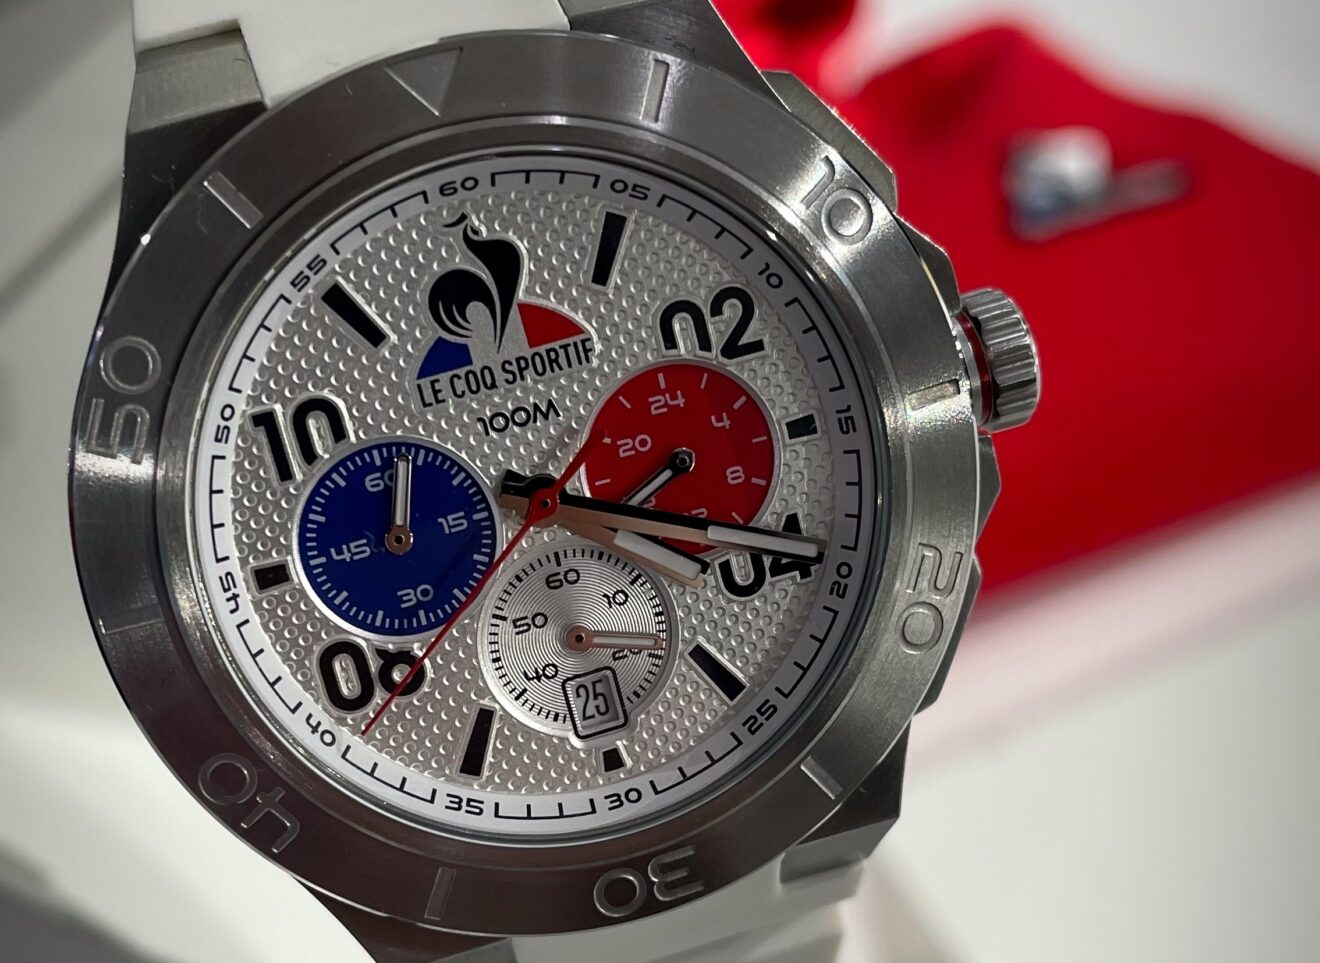 Le Coq Sportif sort ses premières montres avec une marque française bien connue